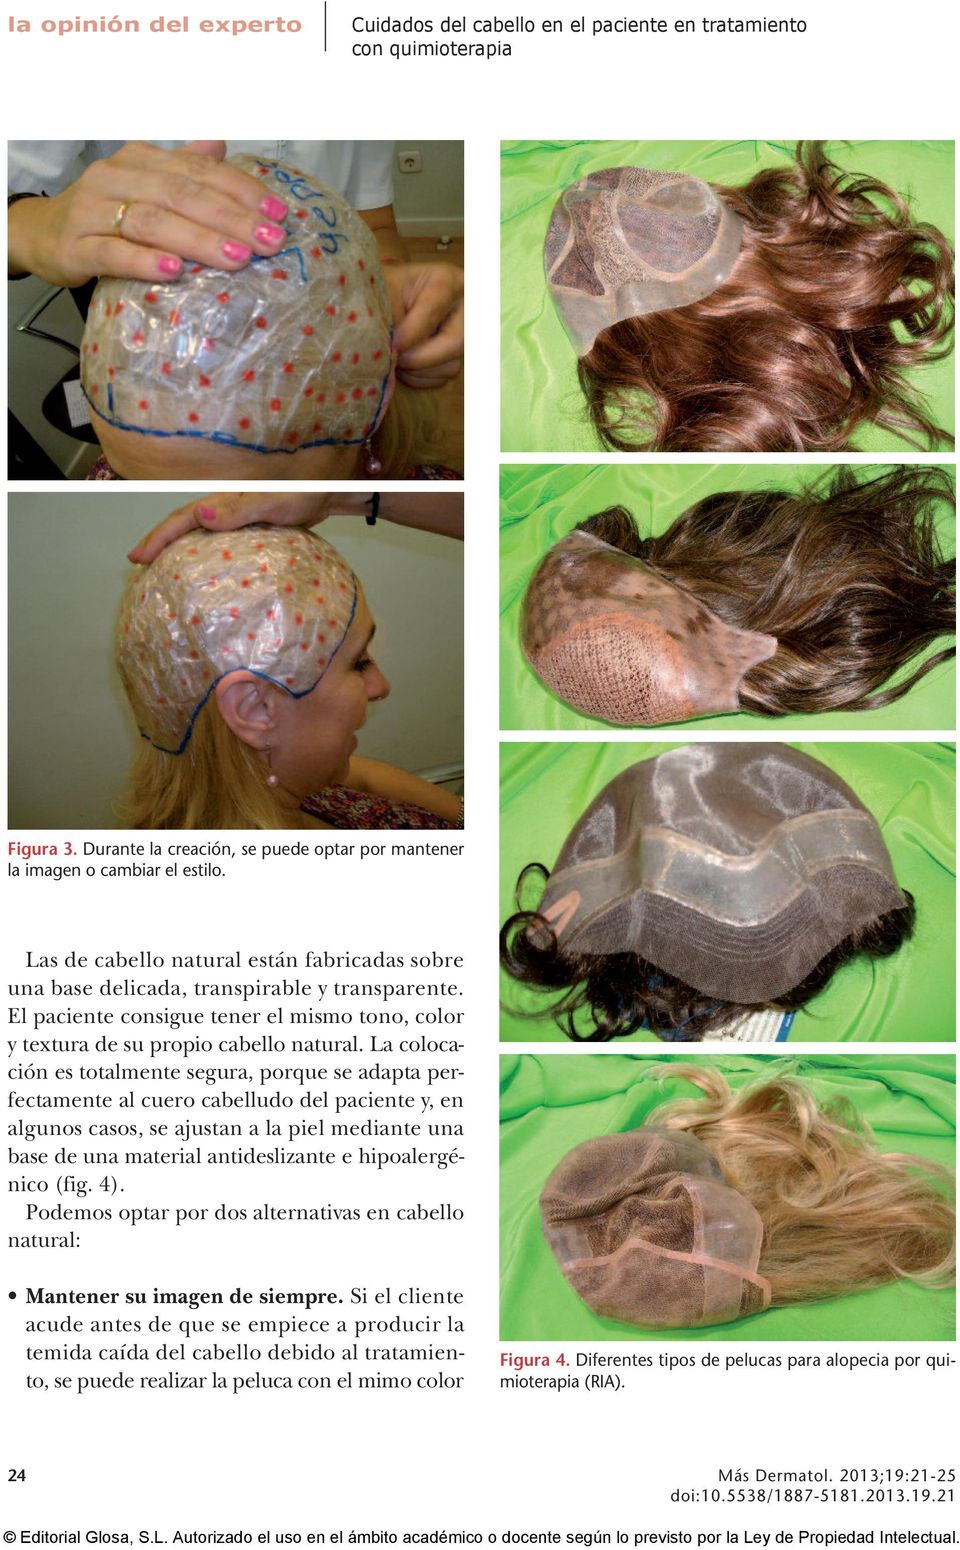 La colocación es totalmente segura, porque se adapta perfectamente al cuero cabelludo del paciente y, en algunos casos, se ajustan a la piel mediante una base de una material antideslizante e